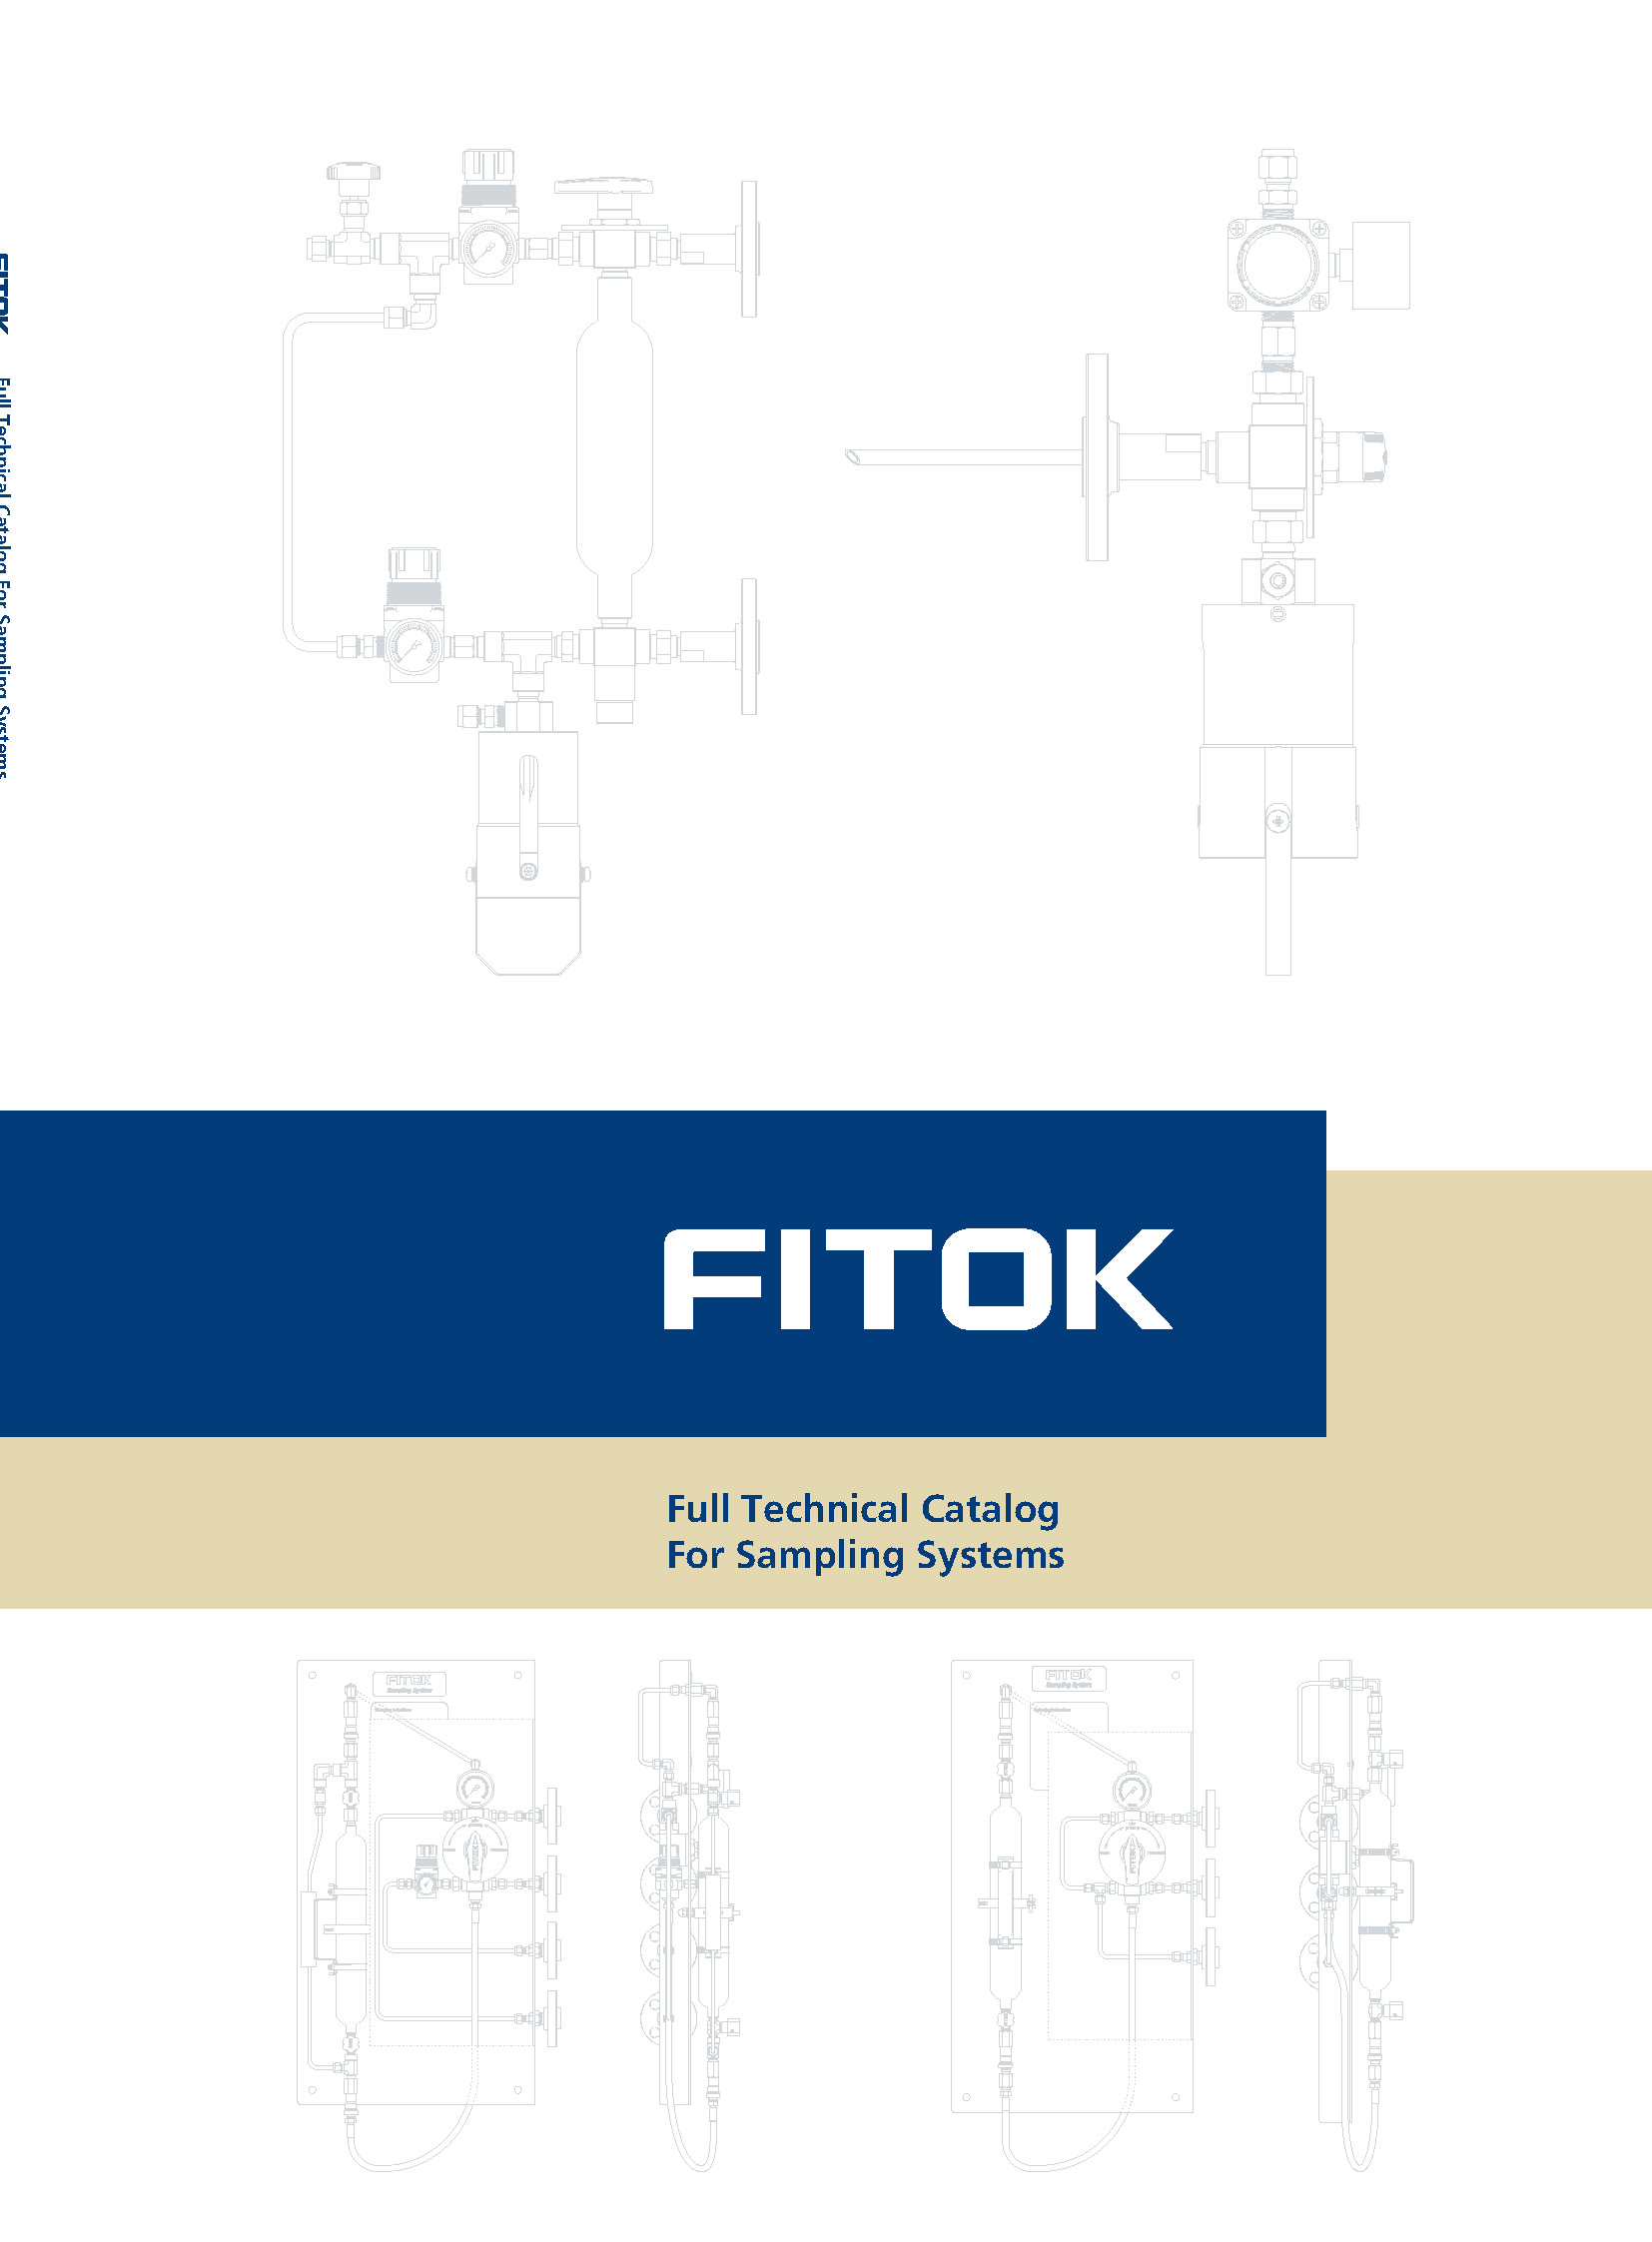 FITOK Katalog für Probenahmesysteme